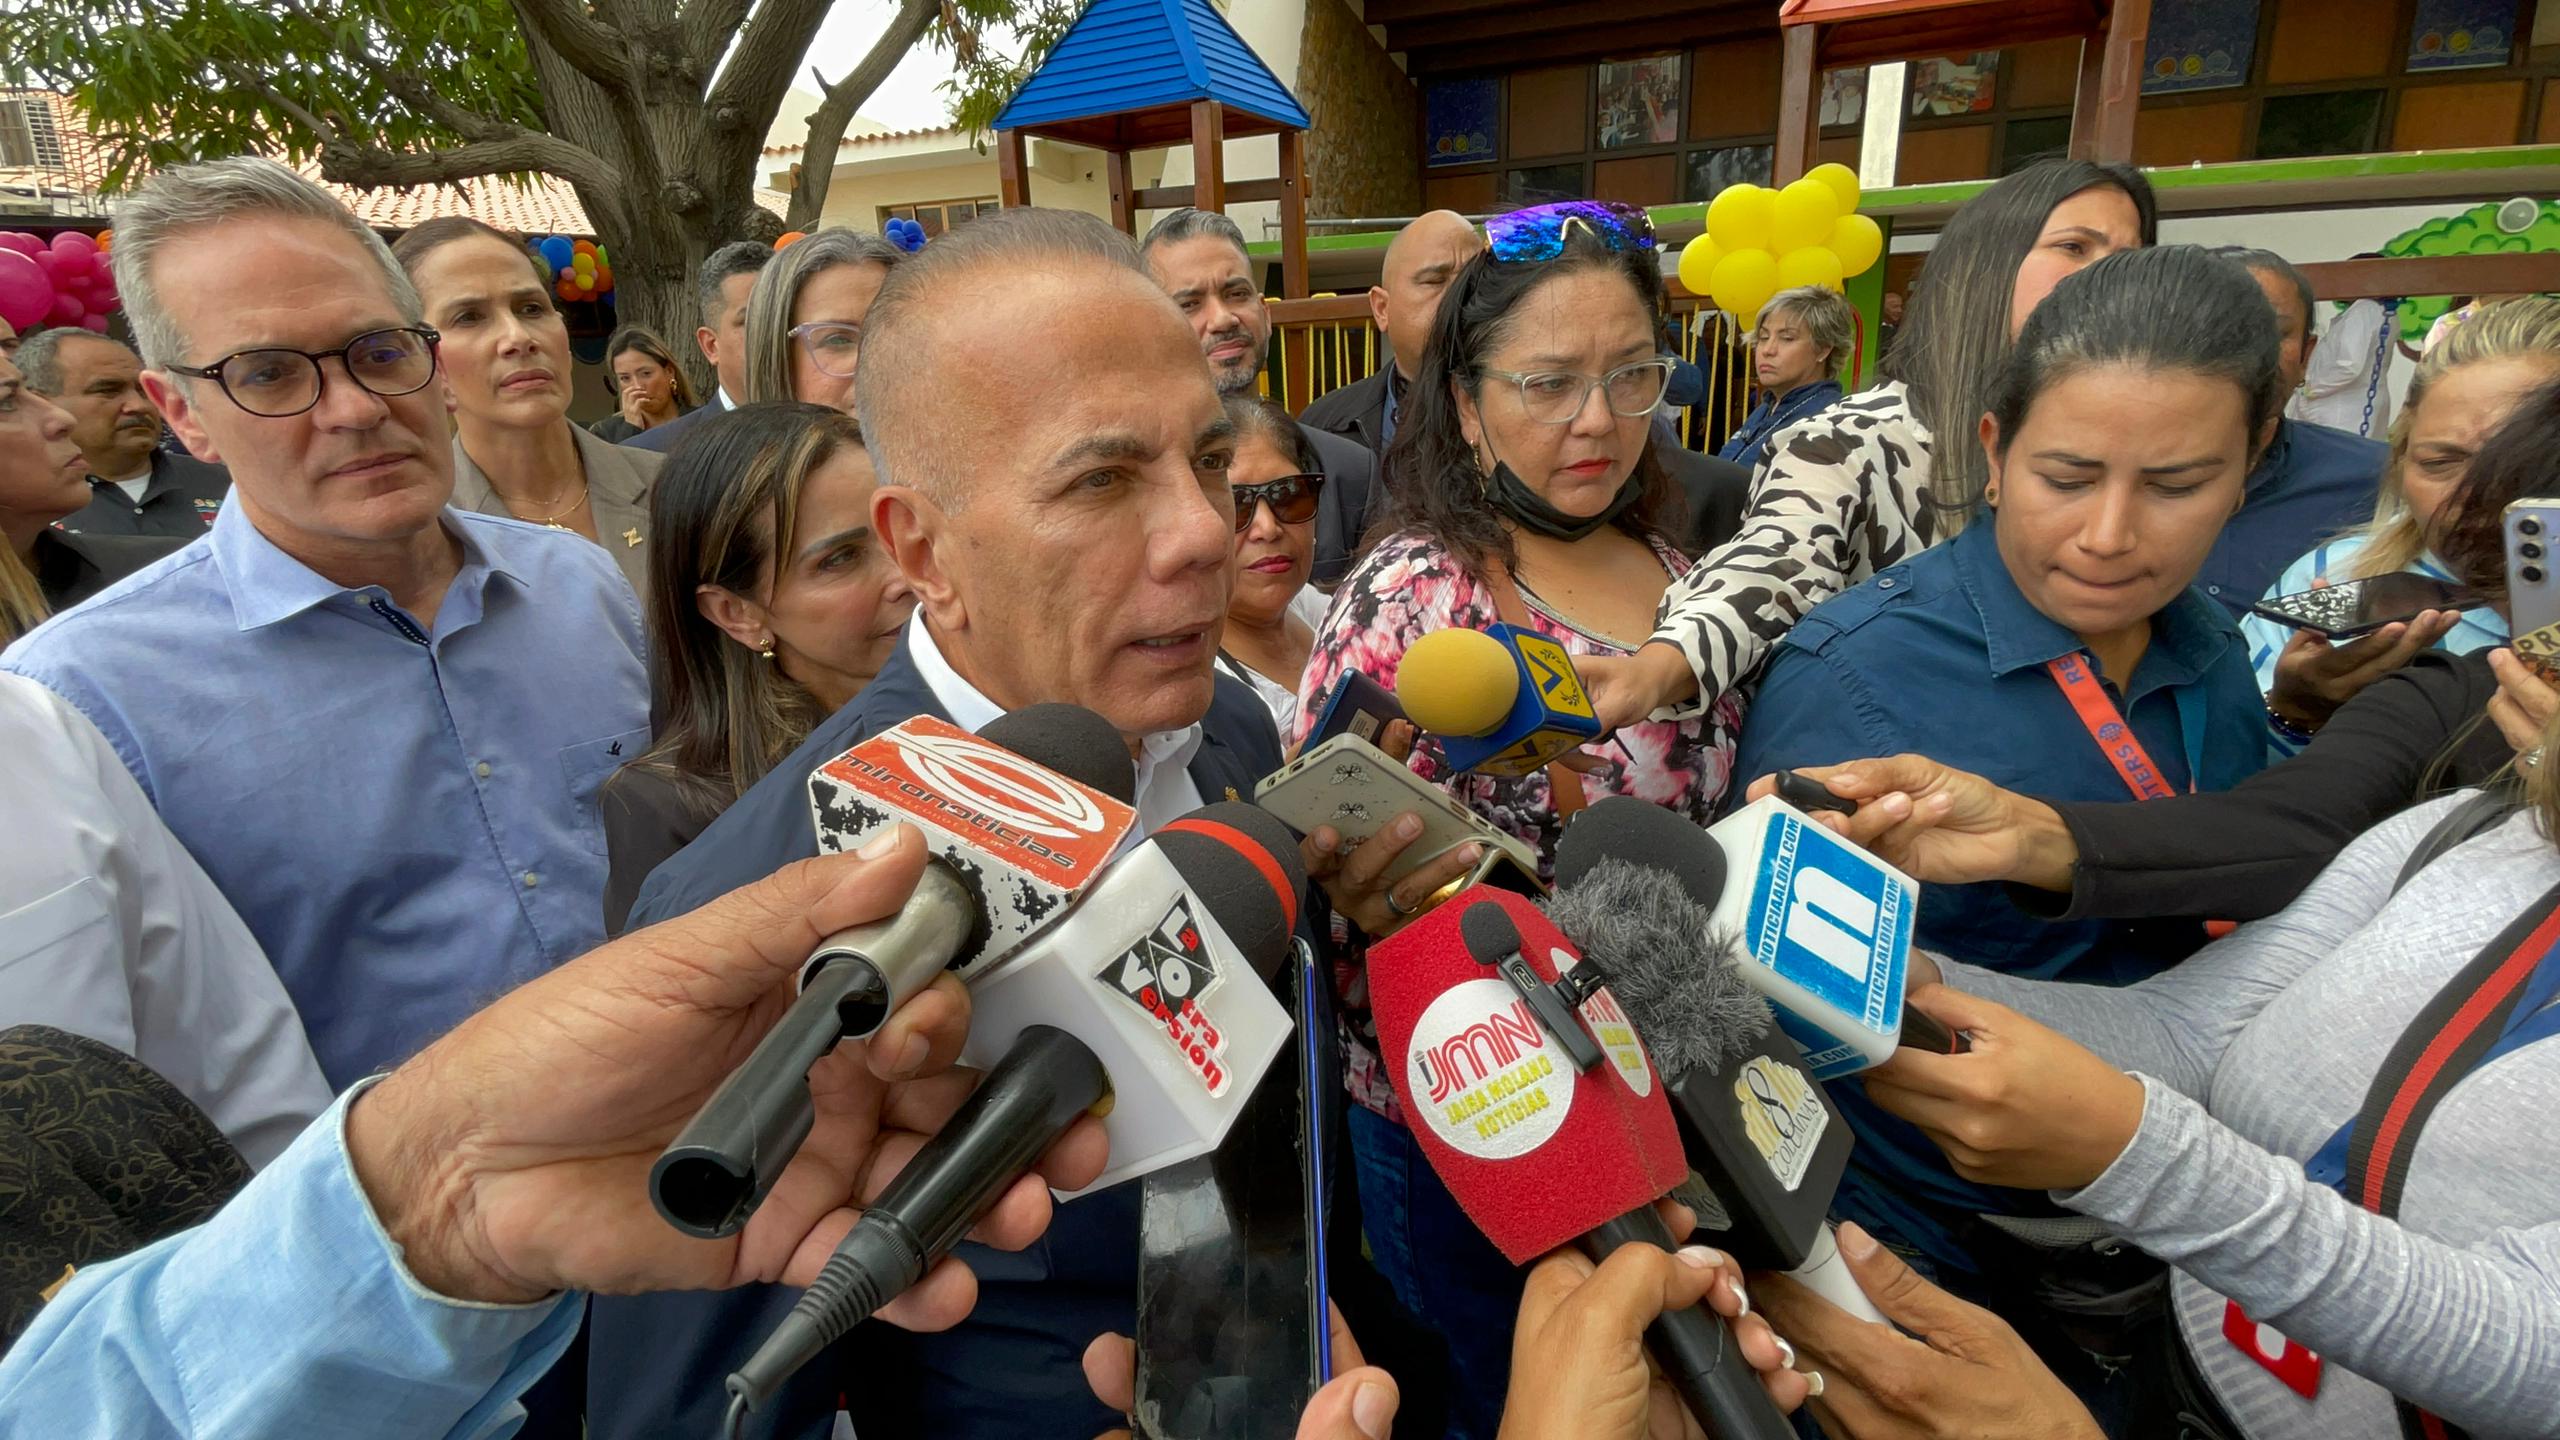 Gobernador Rosales: “Vamos a votar, abstenernos sería una calamidad para Venezuela”